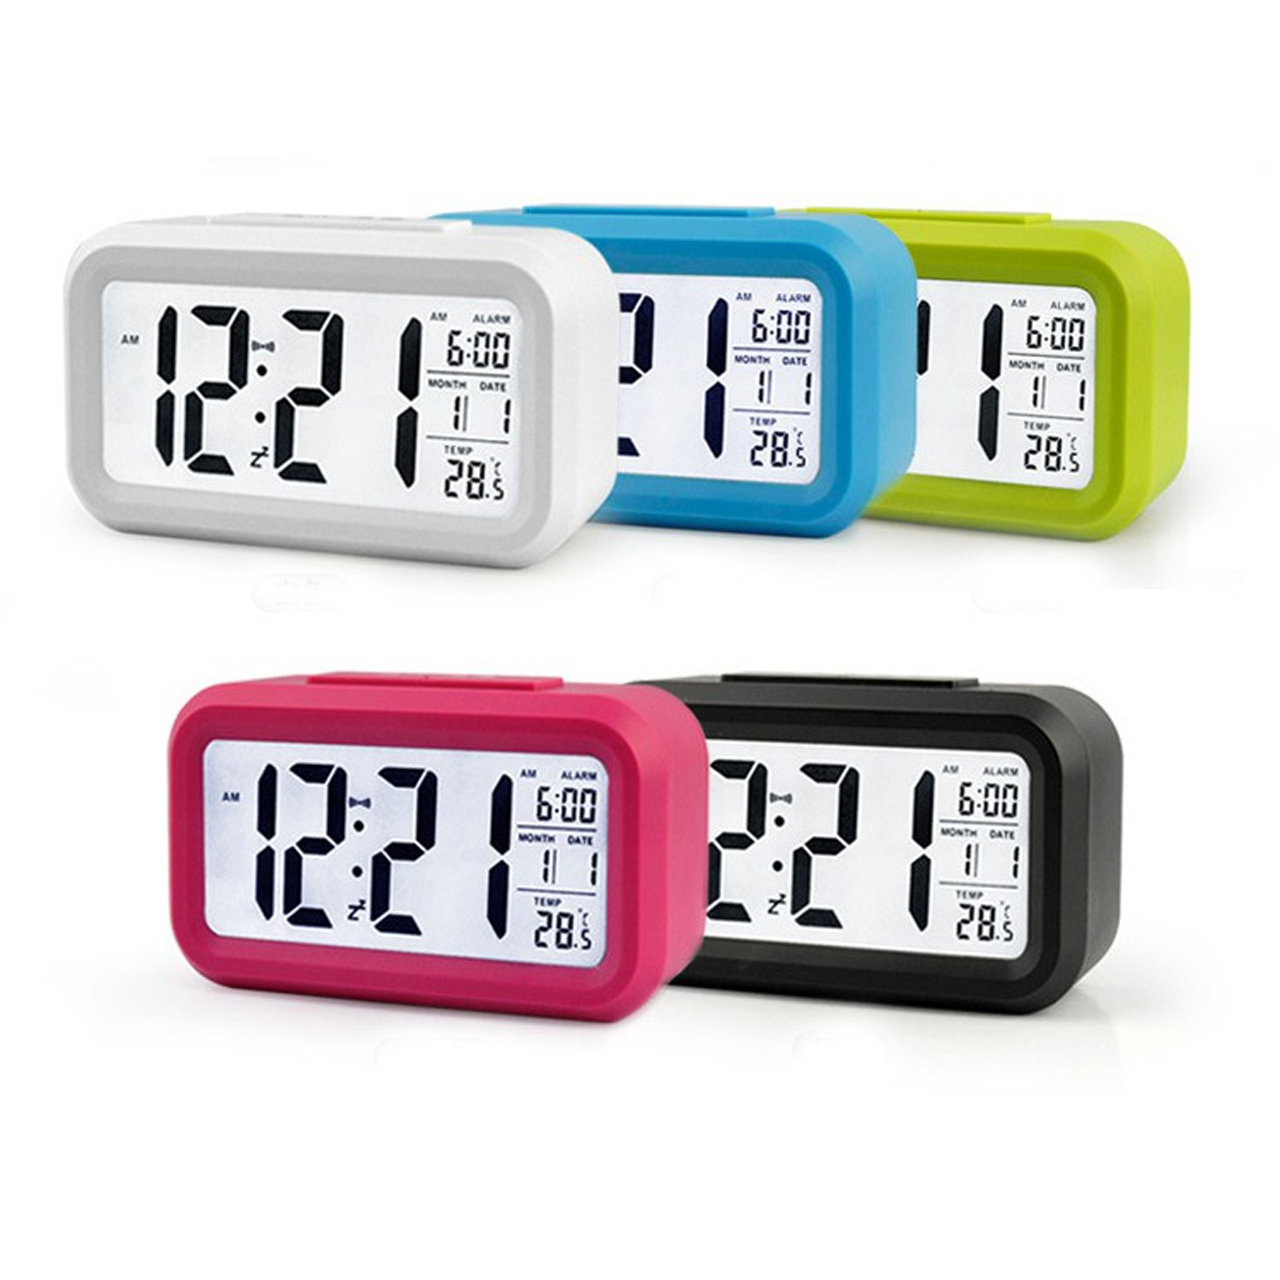 Đồng hồ báo thức điện tử để bàn mini màn hình led đa chức năng thời gian, báo thức, nhiệt độ - hàng chính hãng Vinetteam